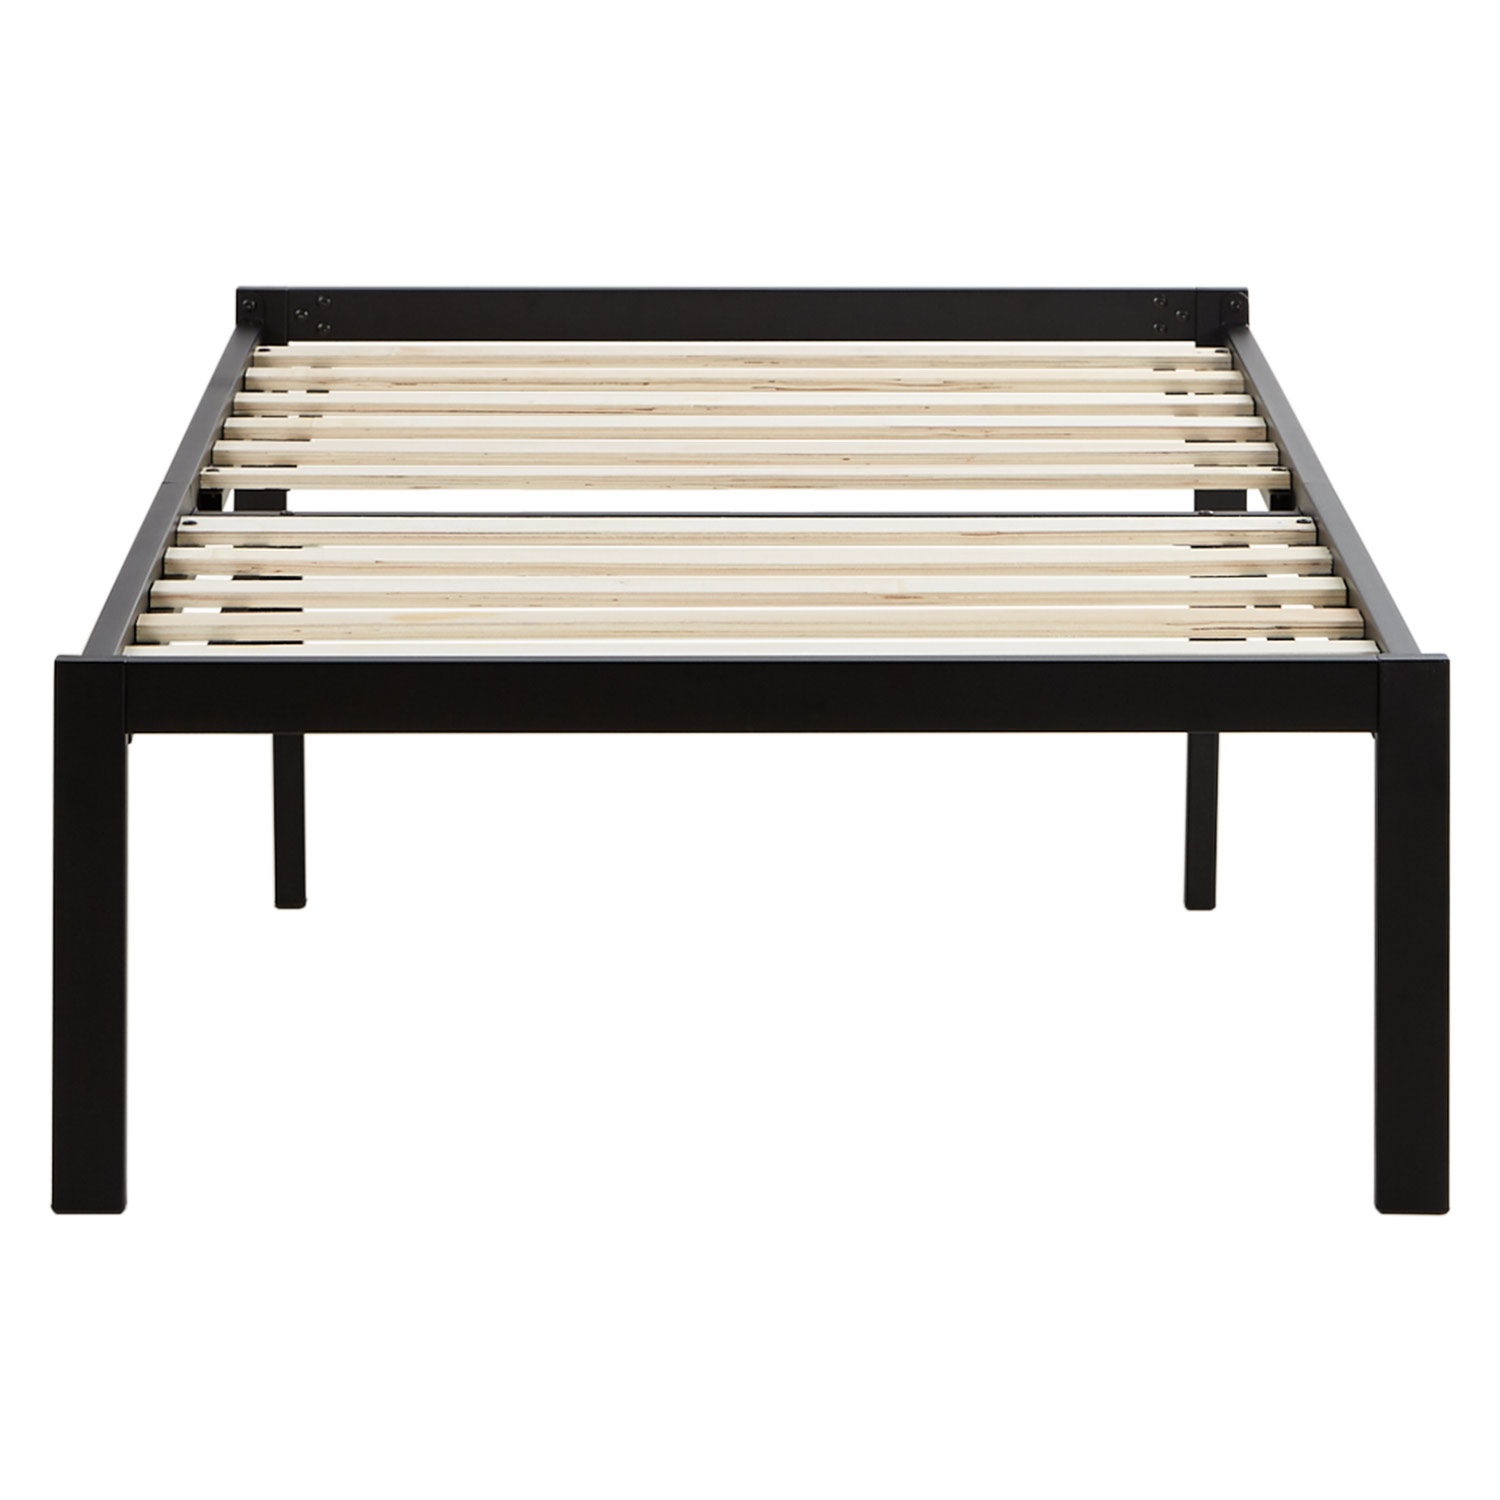 Solid Metal Bed 90x200 cm Slatts Single Bed Black Futon Bed Platform Bed Frame Guest Bed 